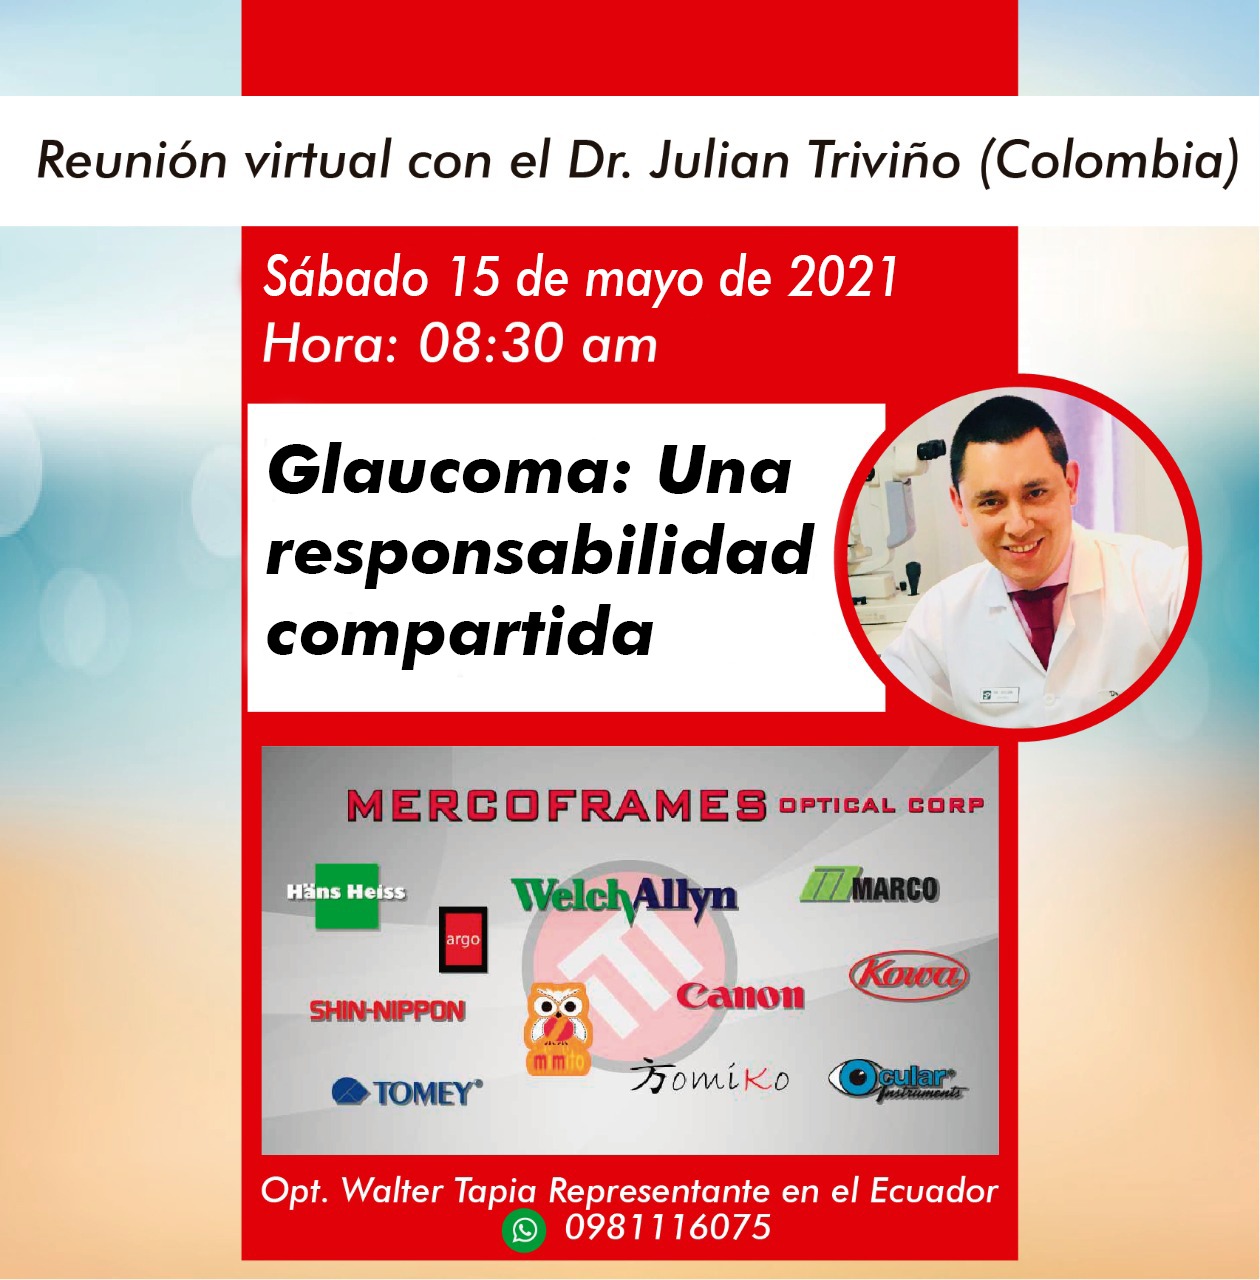 Reunión virtual con el Dr. Julian Triviño (Colombia)